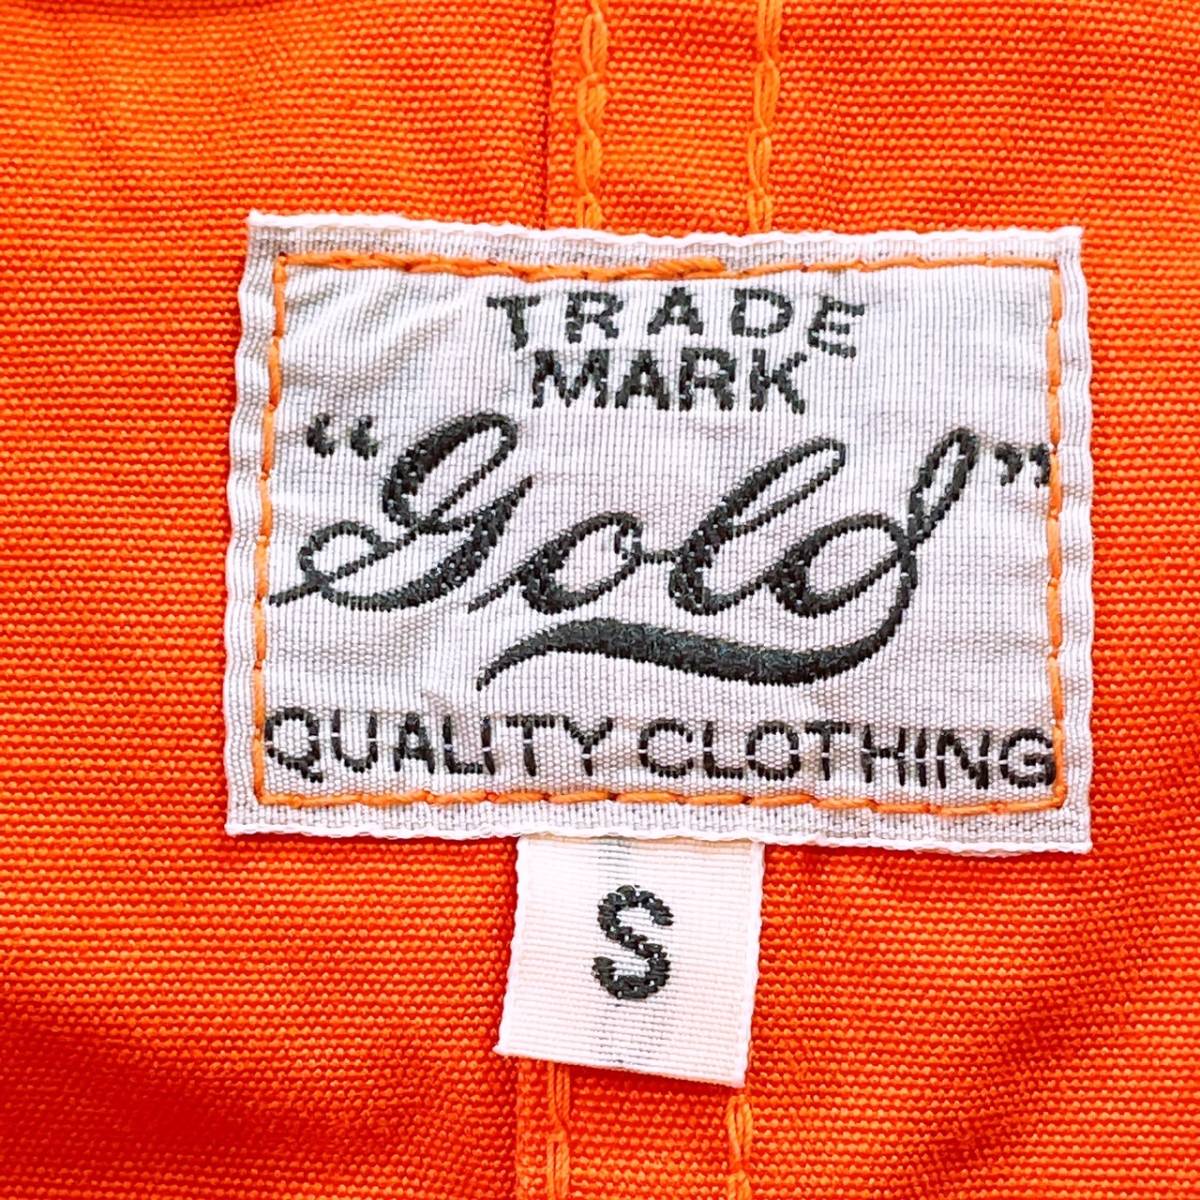 メンズS TRADE MARK GOLD アウター ジャケット パーカージャケット オレンジ 長袖 オーバーサイズ ジップアップ 日本製 ゴールド【14161】